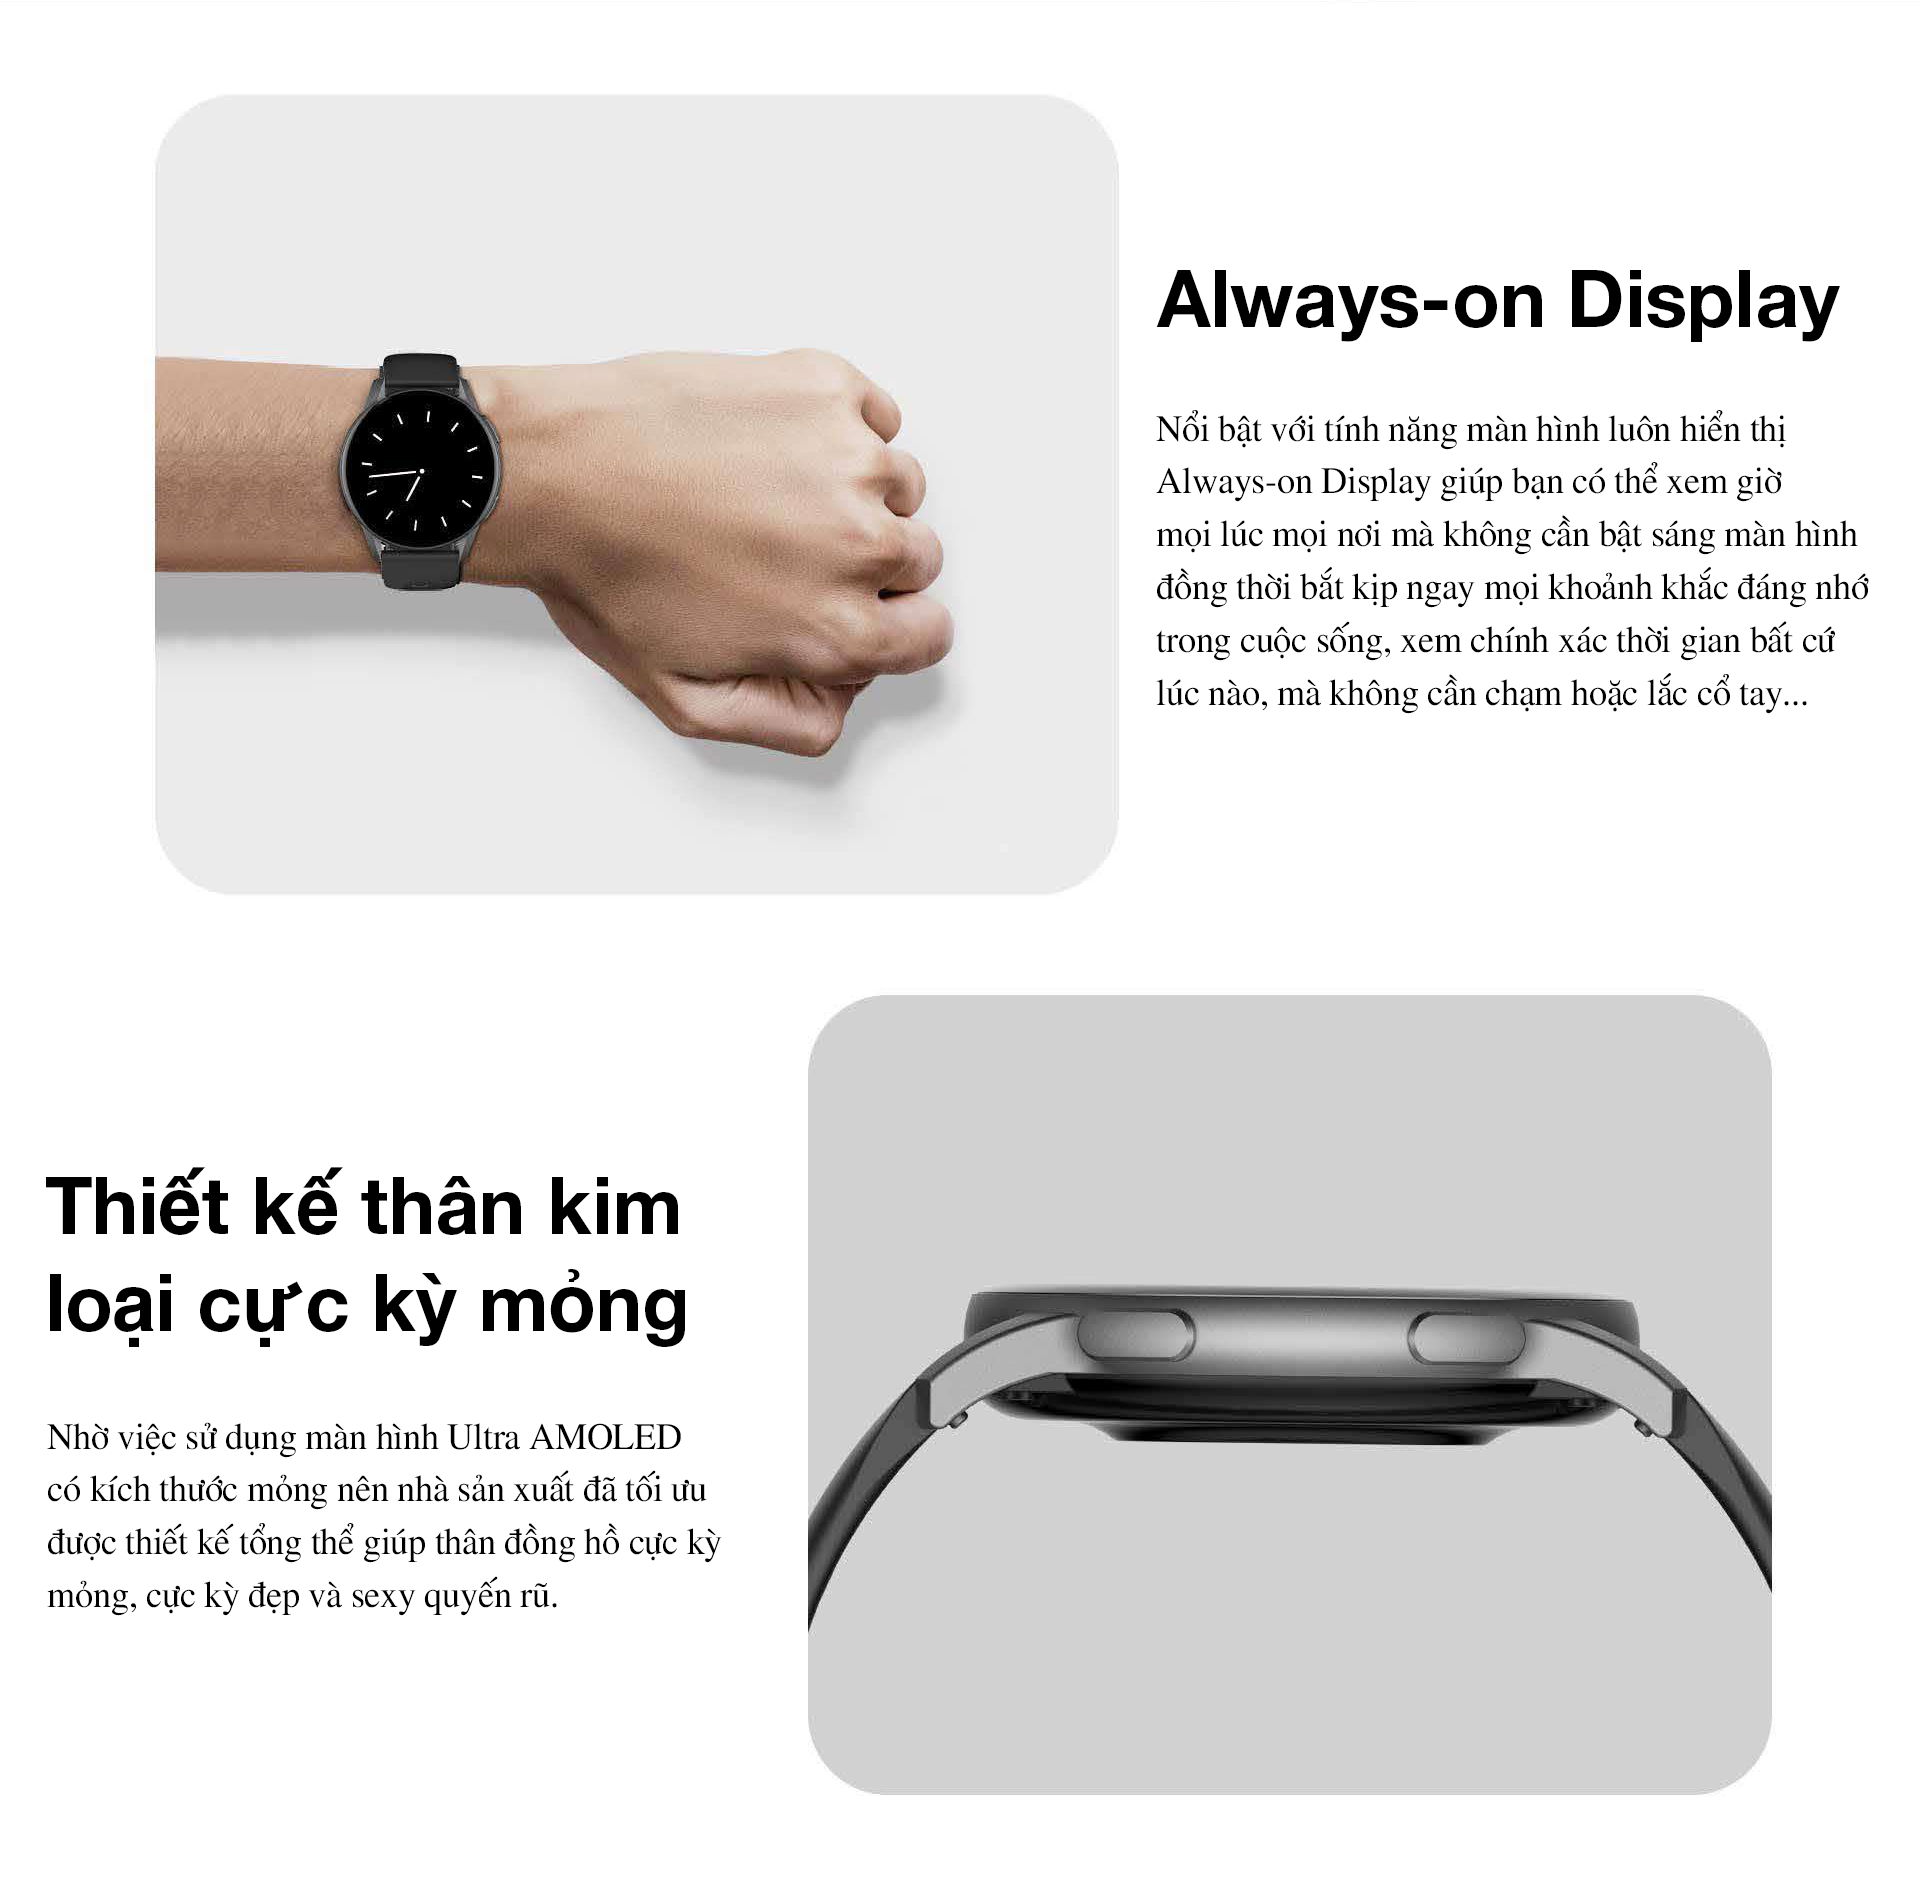 Khám phá tính năng thông minh của đồng hồ Kieslect Smart Watch K11 và trải nghiệm những tính năng độc đáo mà nó mang lại. Với khả năng kết nối nhanh chóng và các tính năng theo dõi sức khỏe, Kieslect Smart Watch K11 sẽ là người bạn đồng hành tin cậy cho cuộc sống của bạn.